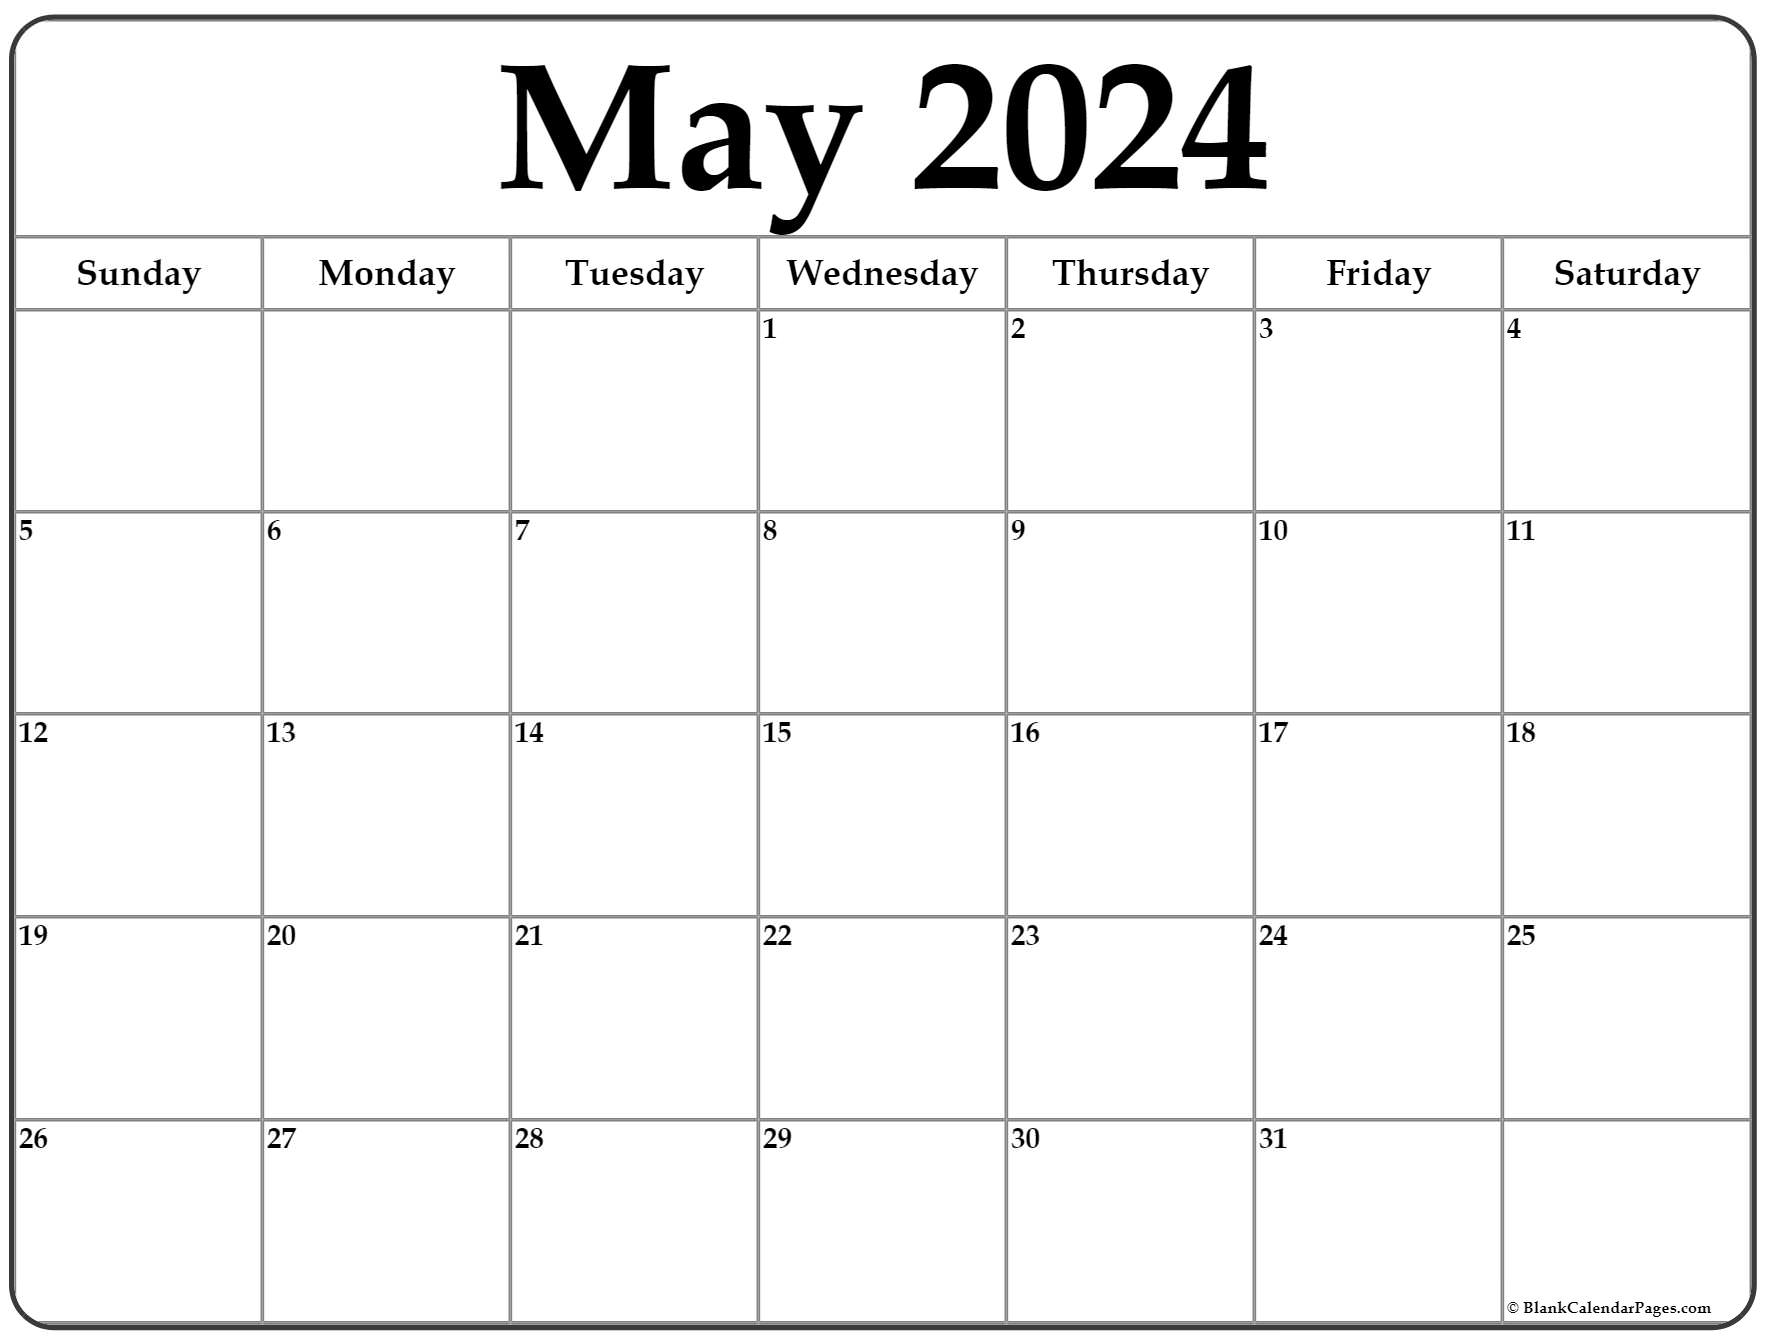 Free May 2024 Calendar Template Images Alisa Belicia